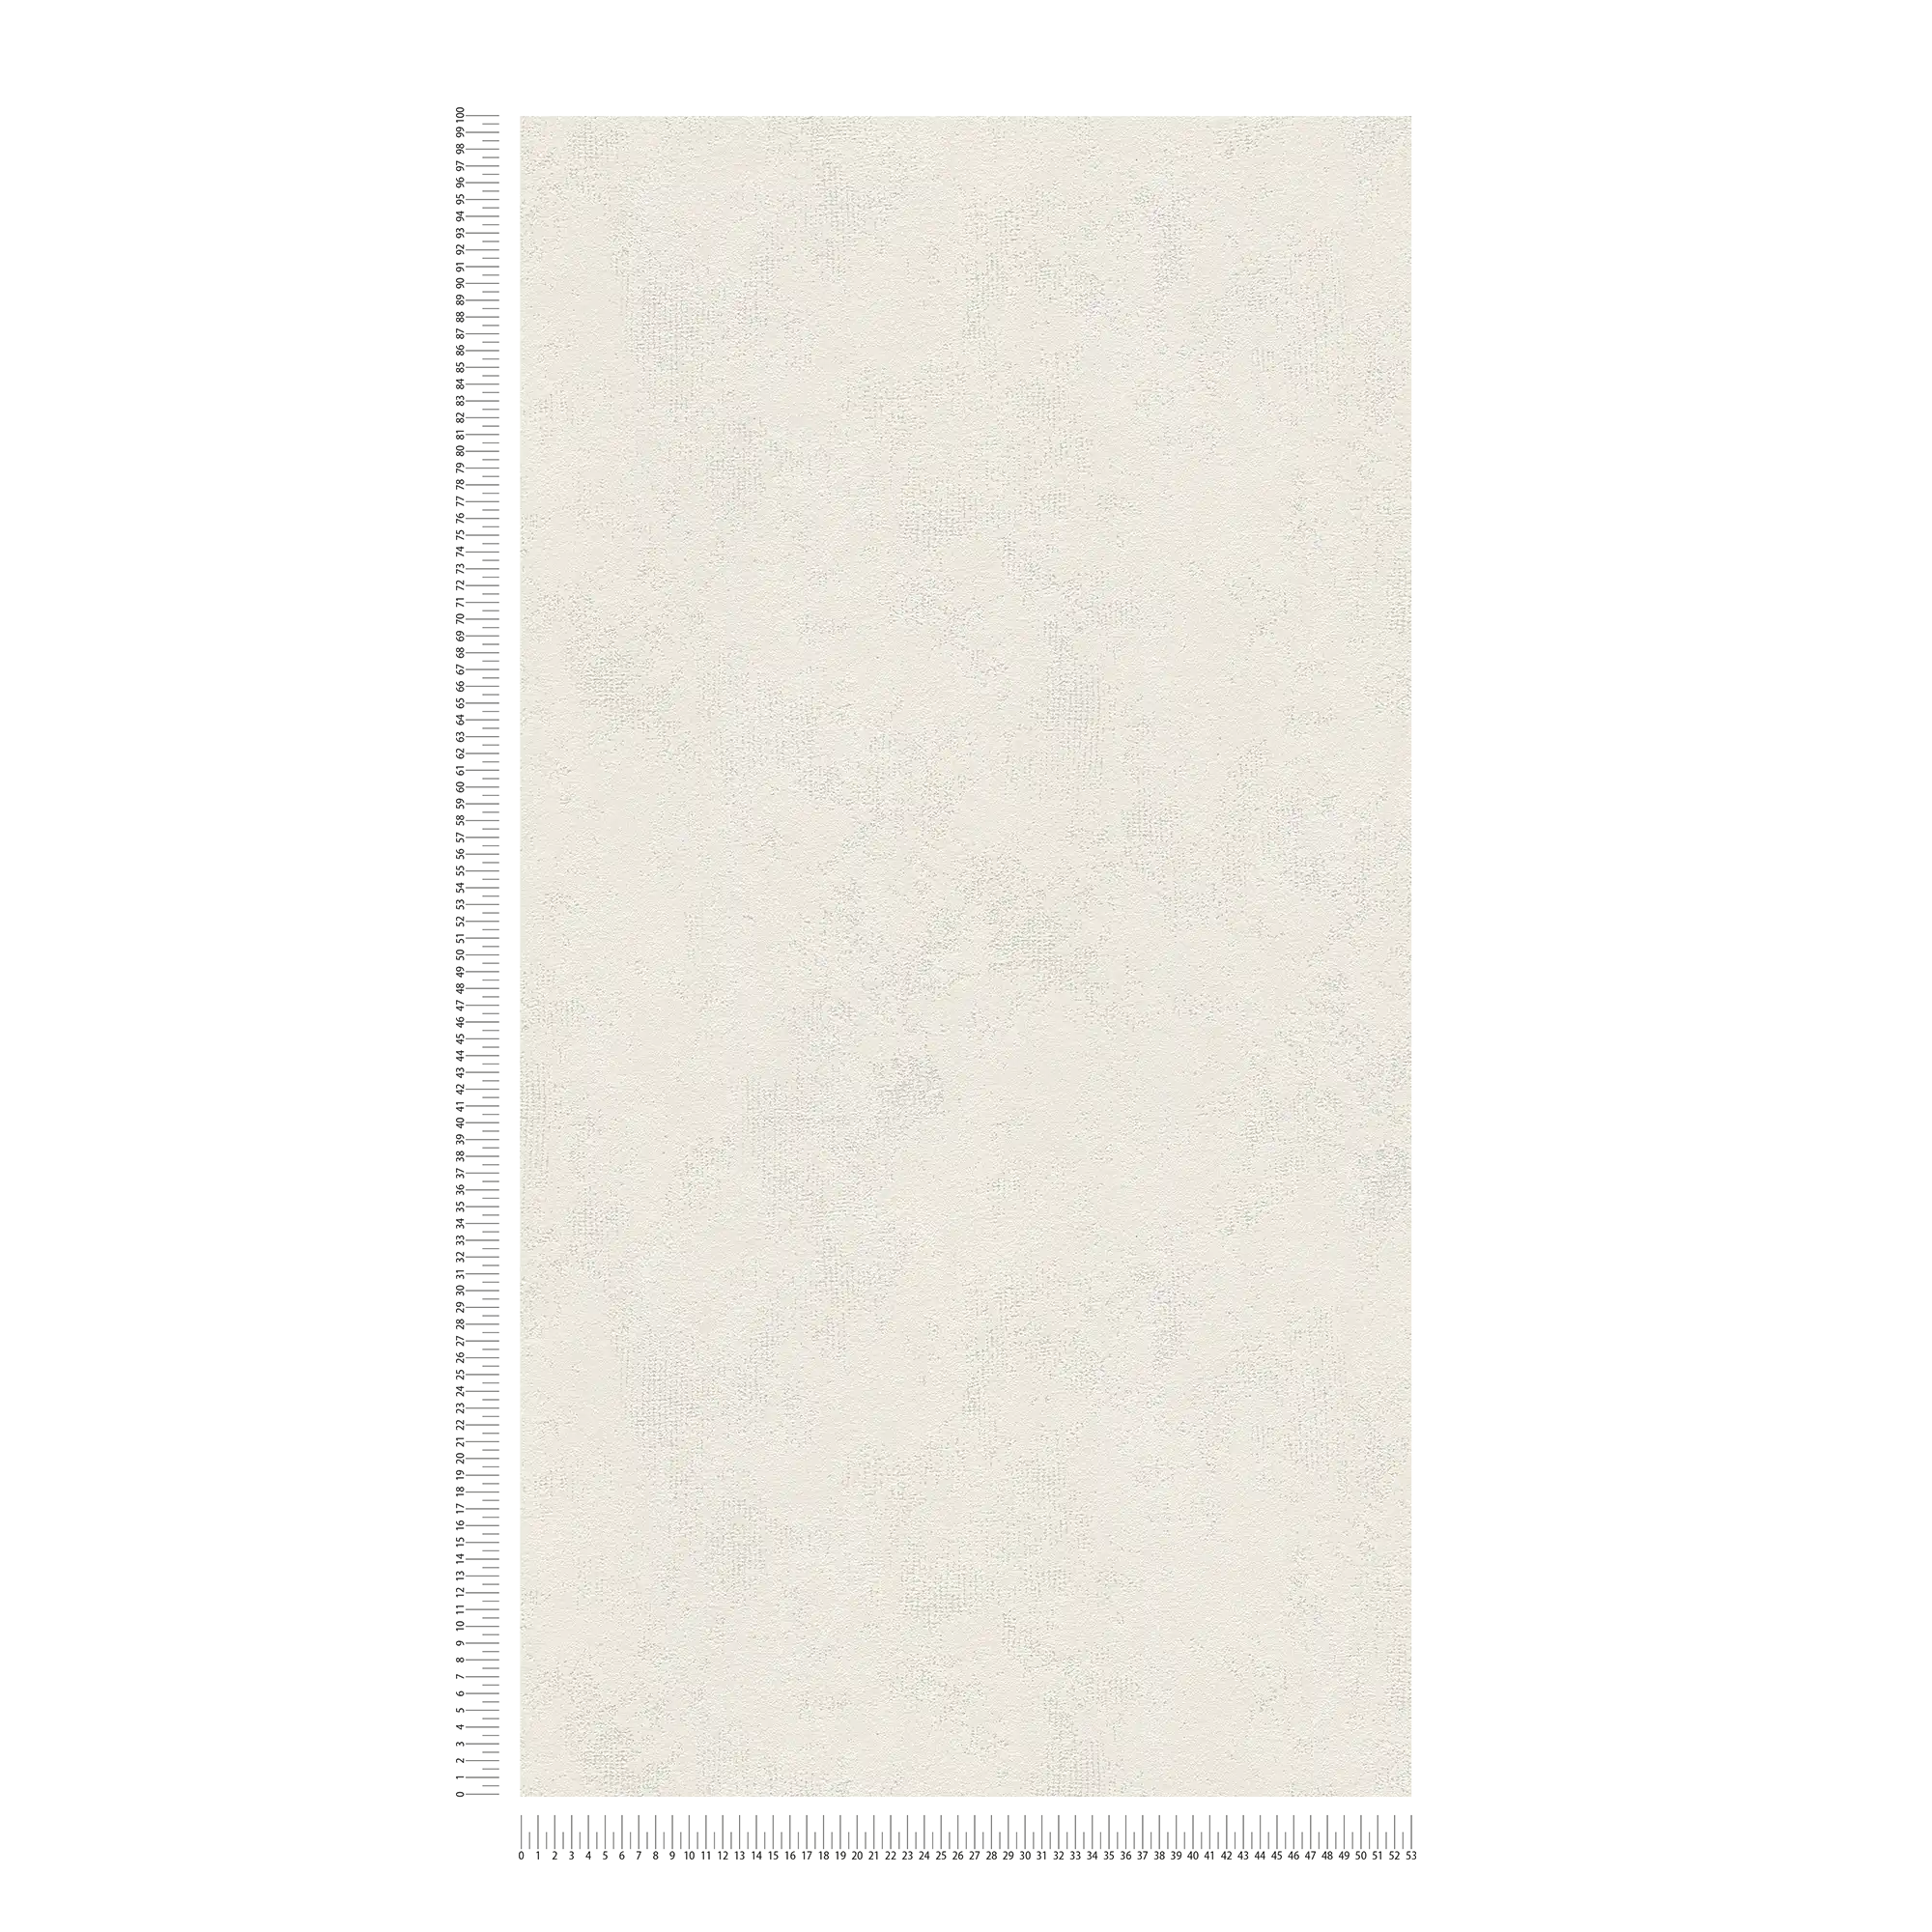             Carta da parati effetto used in tessuto non tessuto con ottica in gesso con tratteggio a colori - crema
        